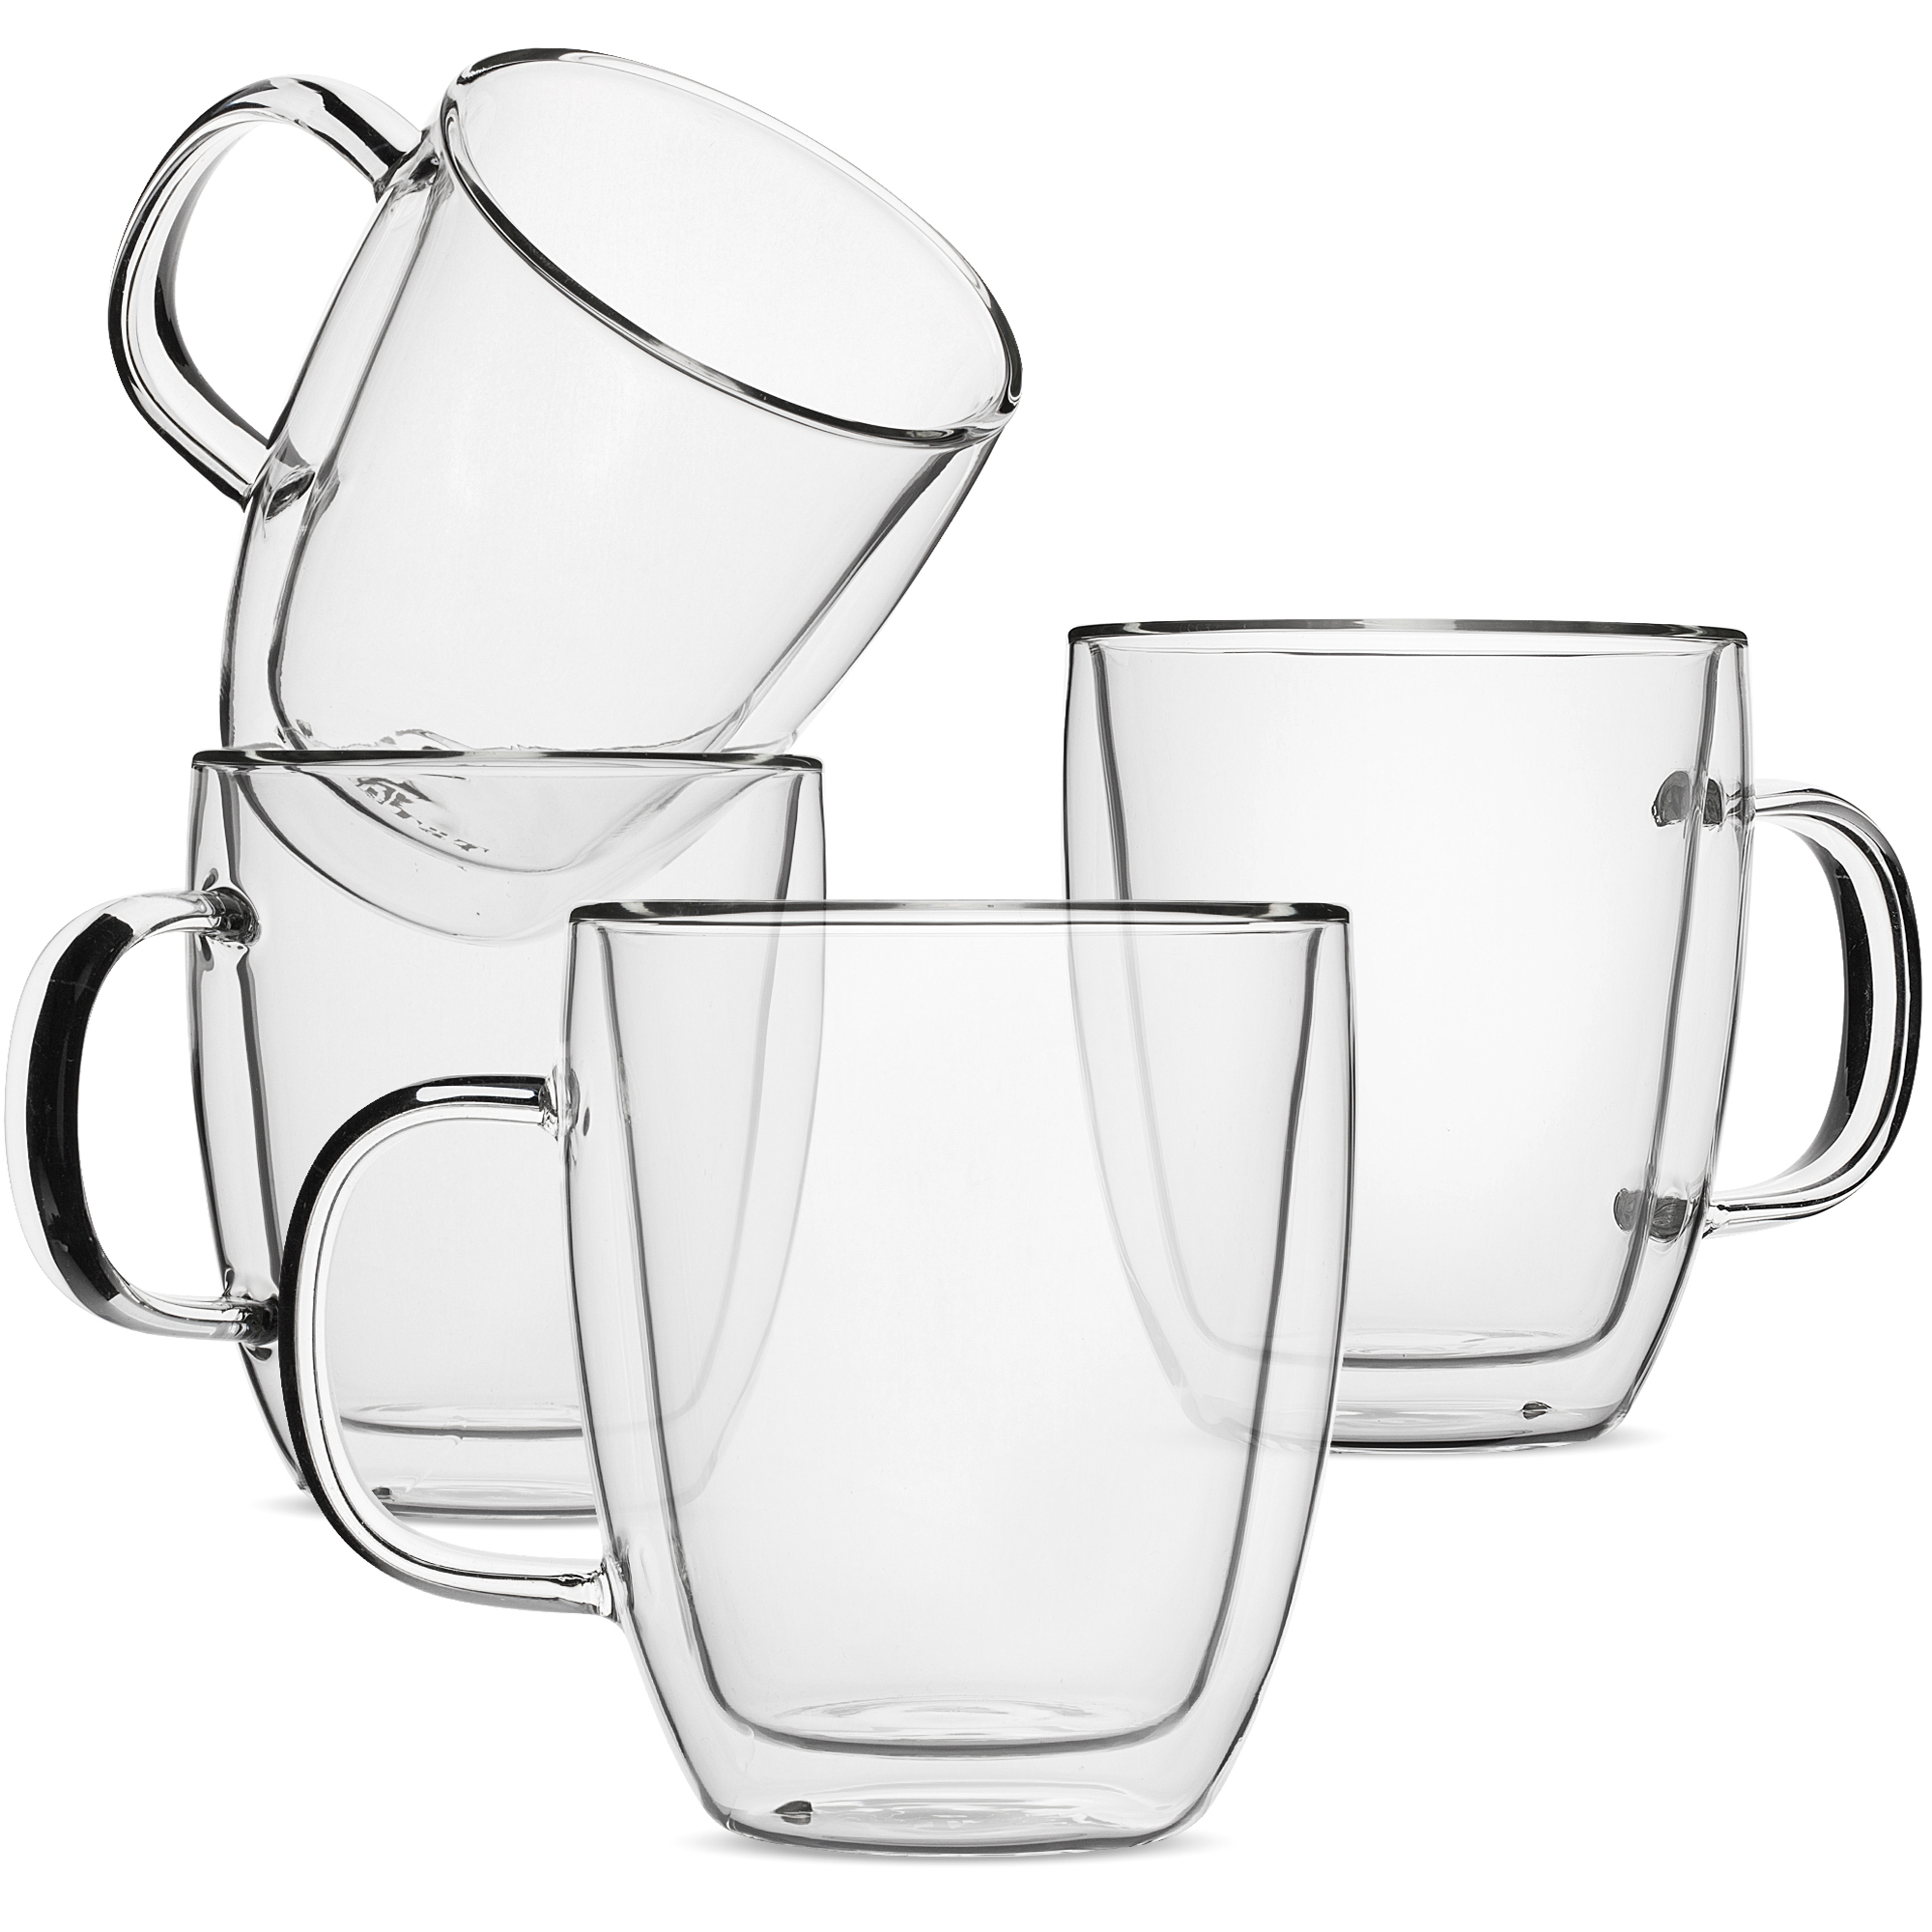 BTäT- Insulated Coffee Mugs (12oz, 350ml)